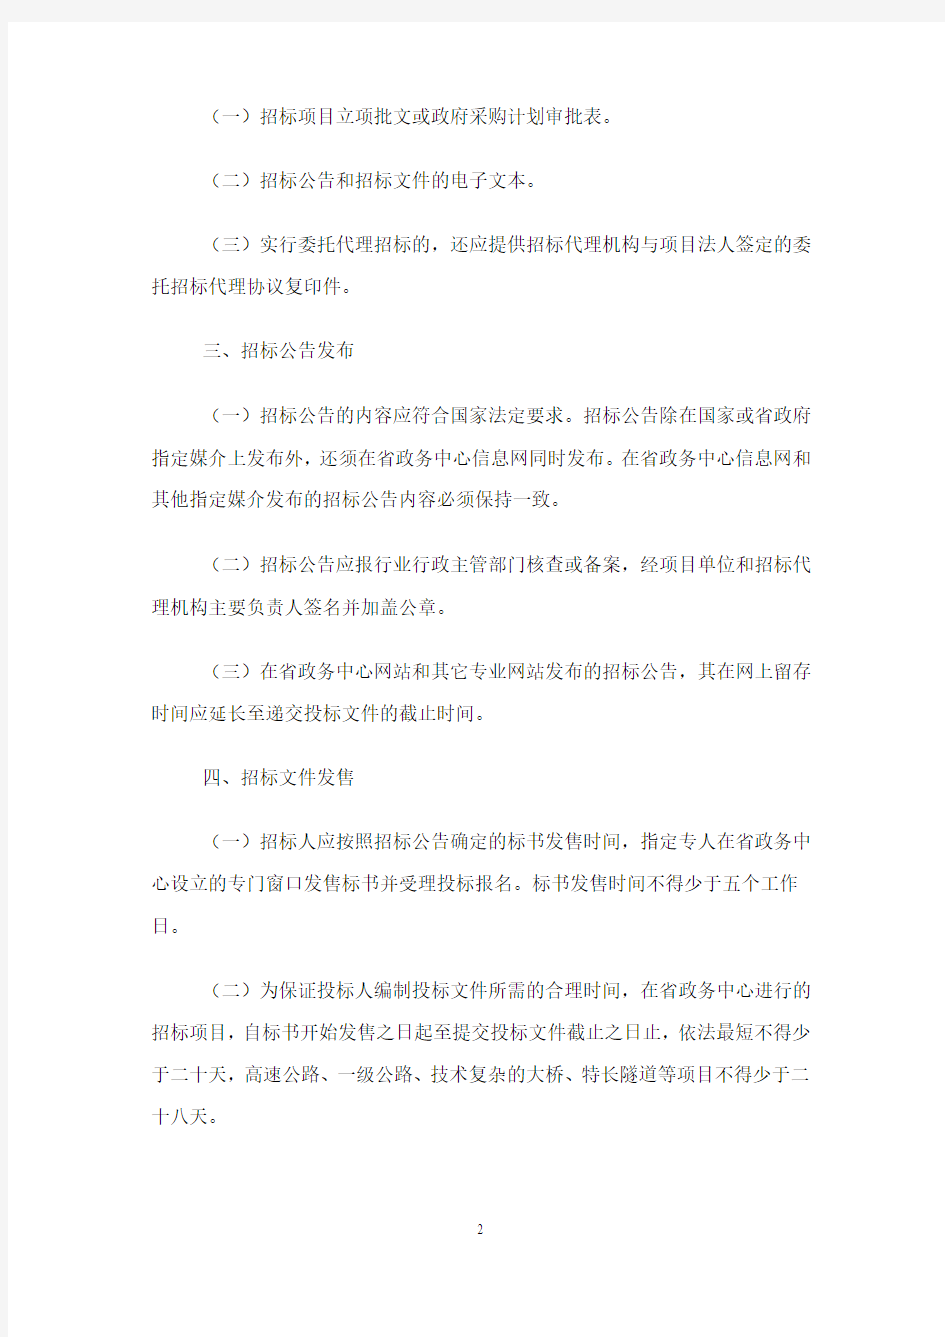 4#。海南省人民政府政务服务中心招标投标业务操作规程(试行)(090330)